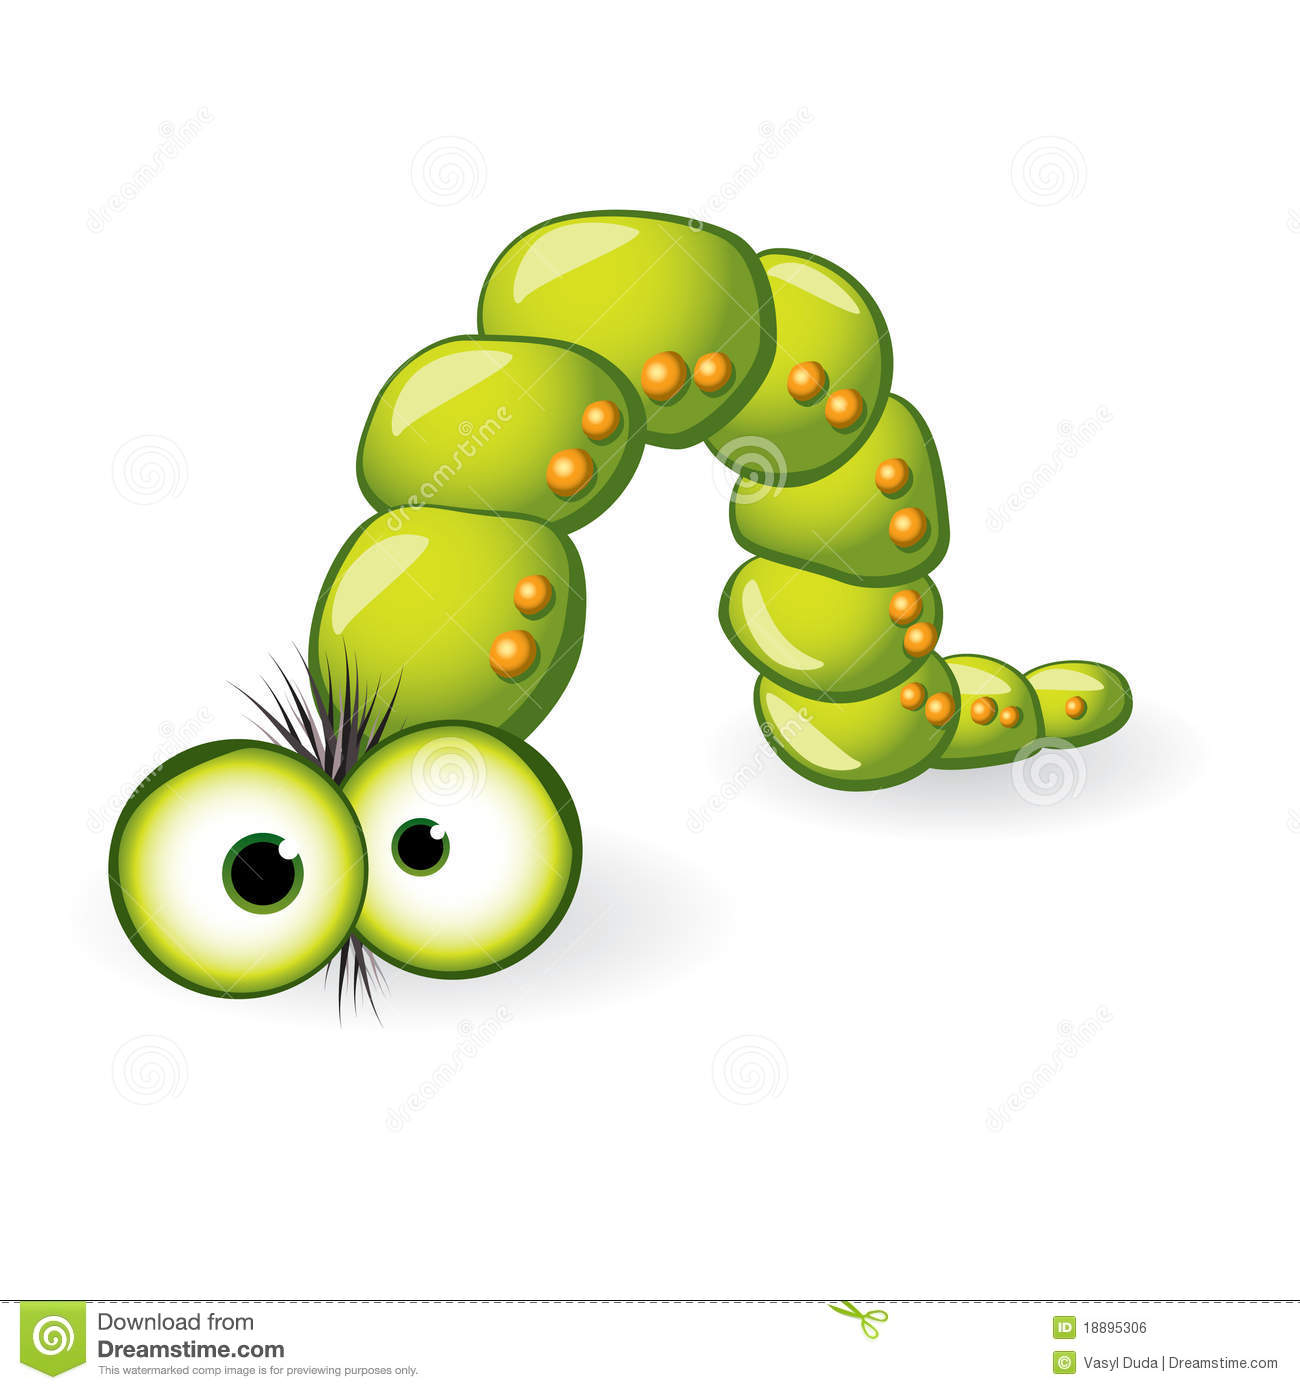 Larva Character  Illustration On White Background For Design